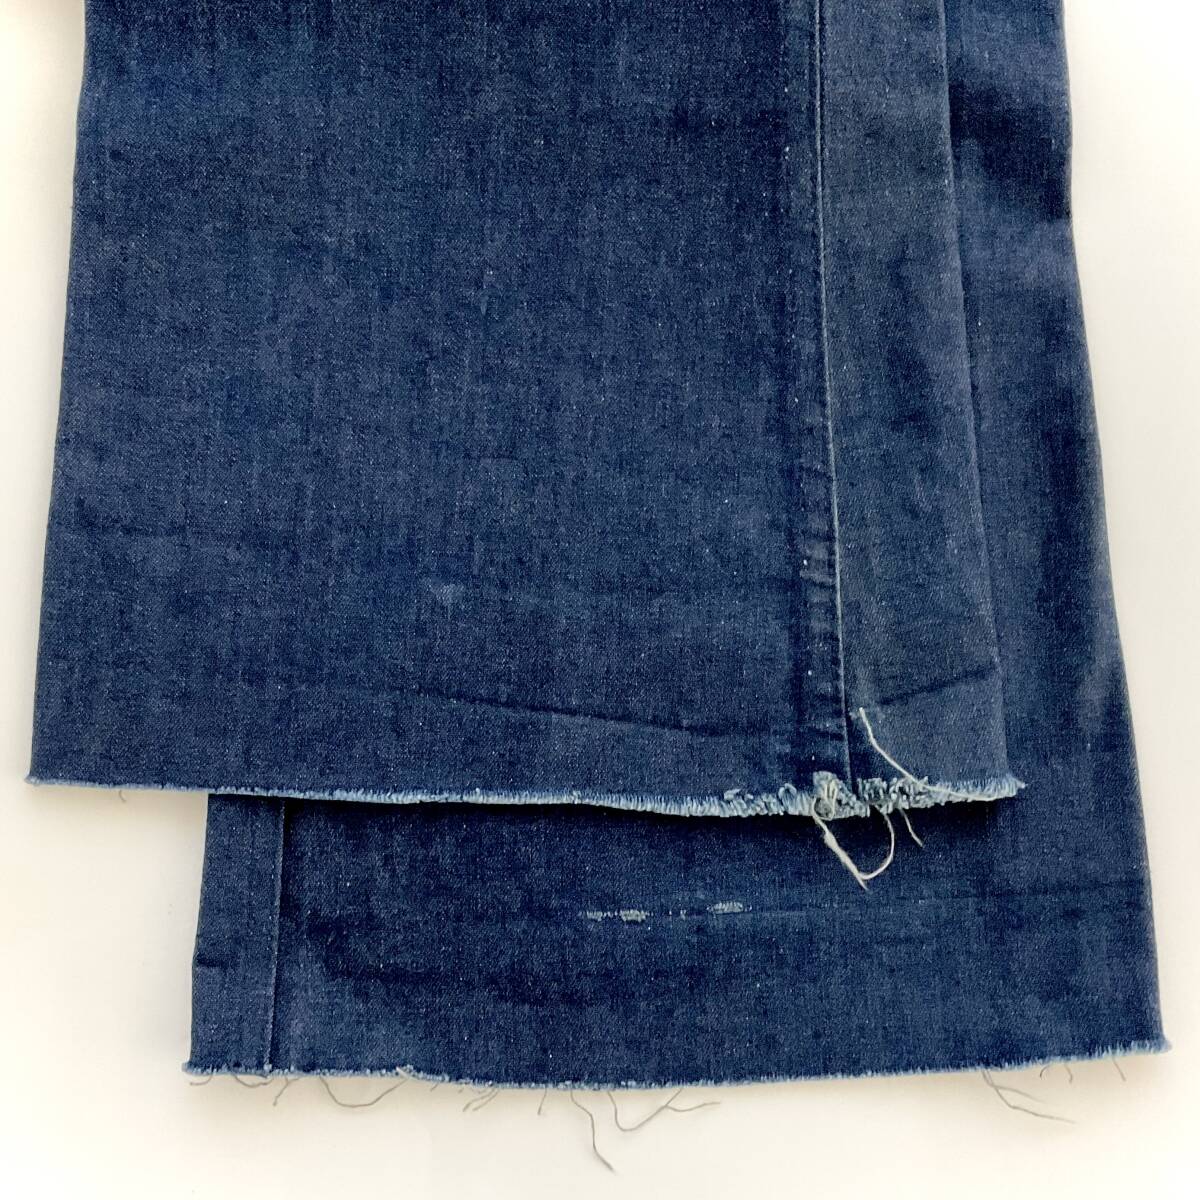  old clothes US NAVY Denim pants 32XL cotton 100% W318